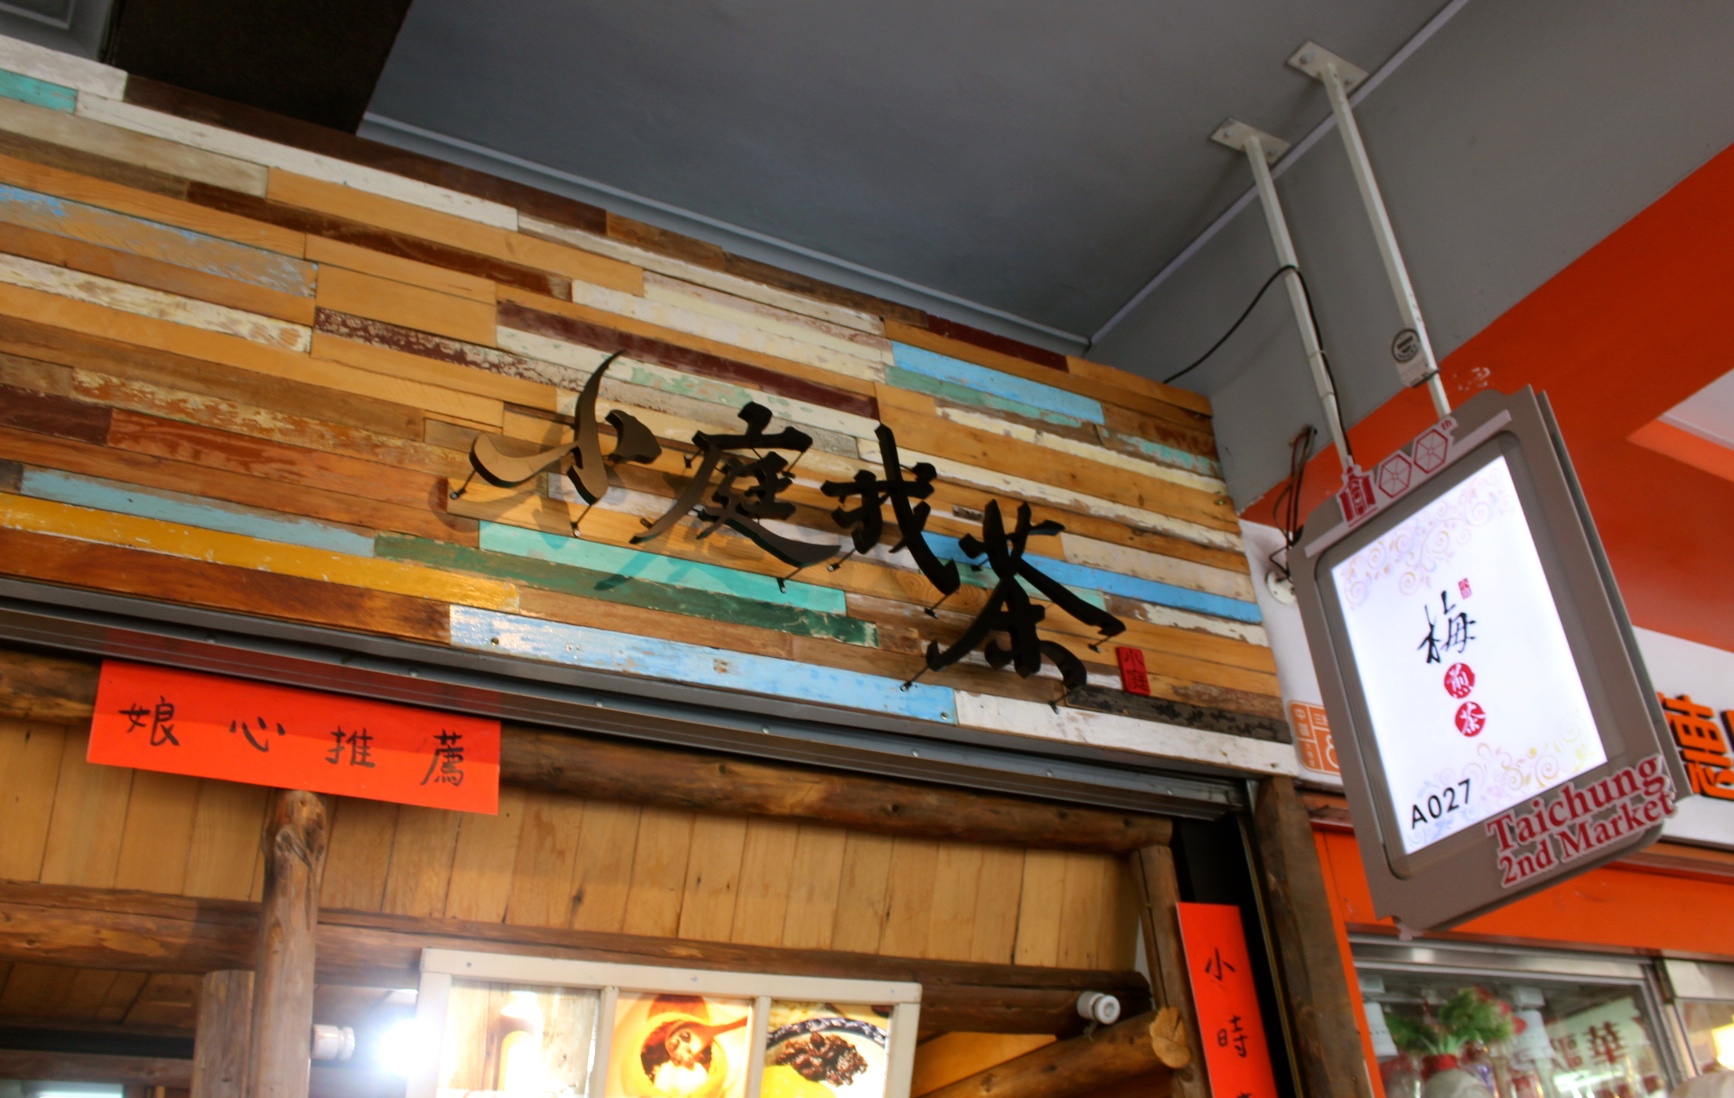 【台中 小庭找茶】藏身台中第二市場小店。台南傳統椪餅大玩創意成了「凸餅冰淇淋」